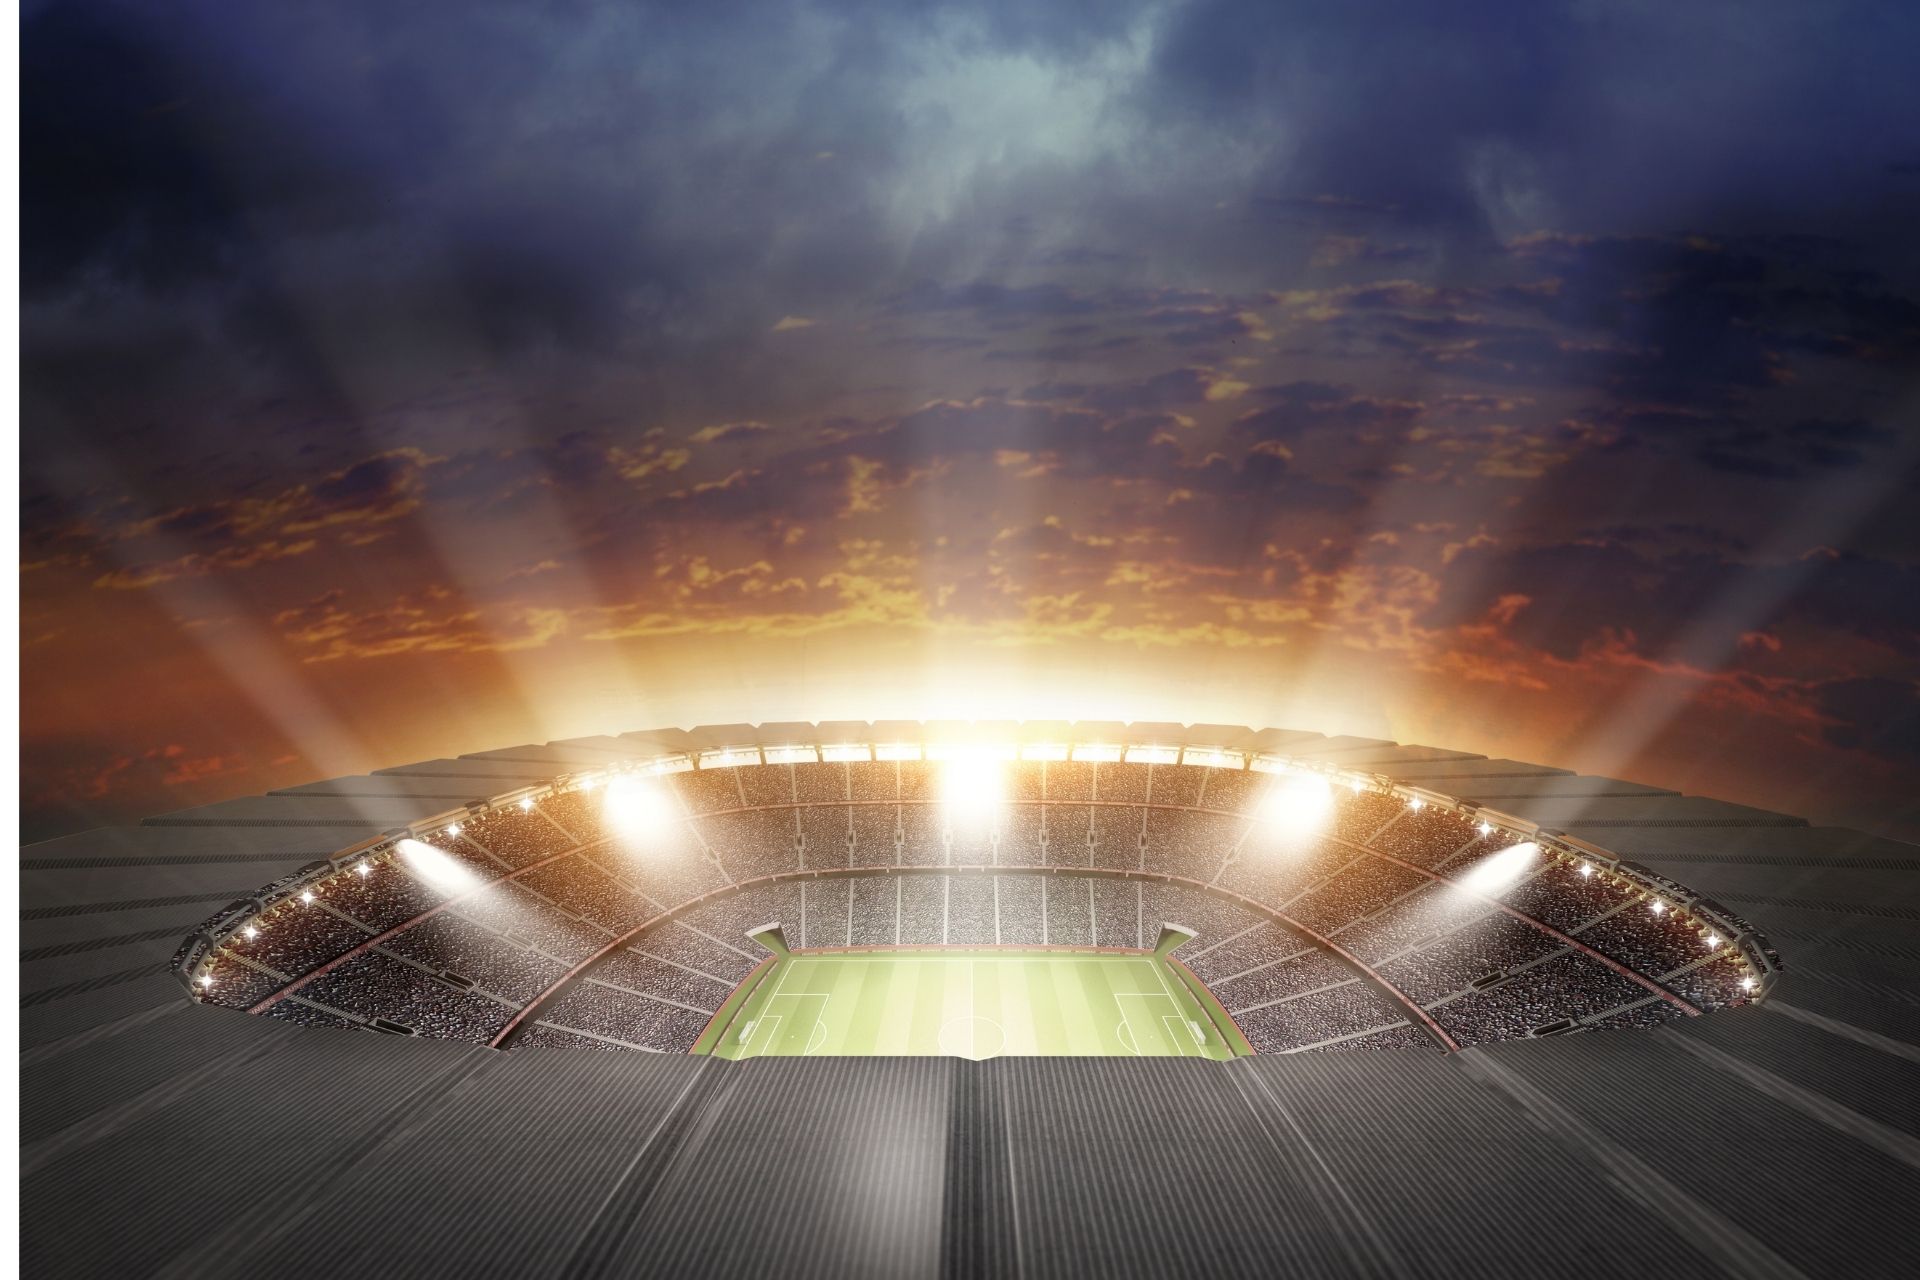 Na stadionie Stade Pierre-Mauroy dnia 2022-04-02 17:00 miał miejsce mecz Lille - Bordeaux zakończony wynikiem 0-0